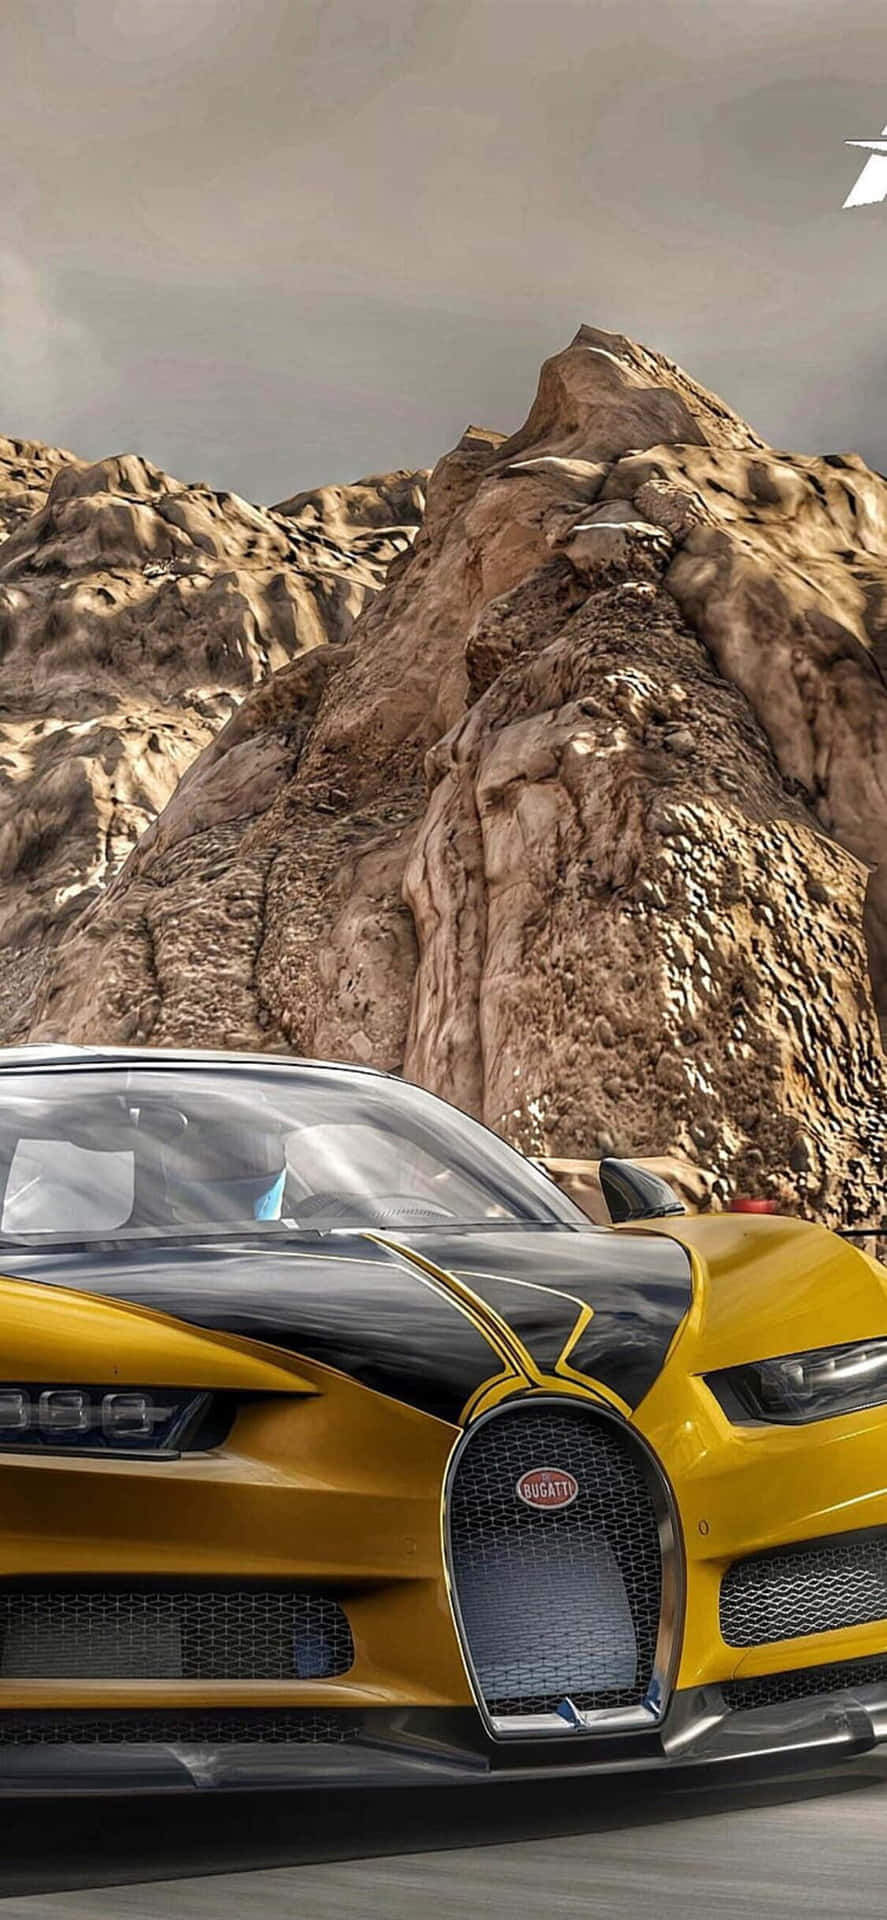 Fondode Pantalla De Forza Motorsport 7 Con Un Bugatti Veyron Amarillo Para Iphone X.